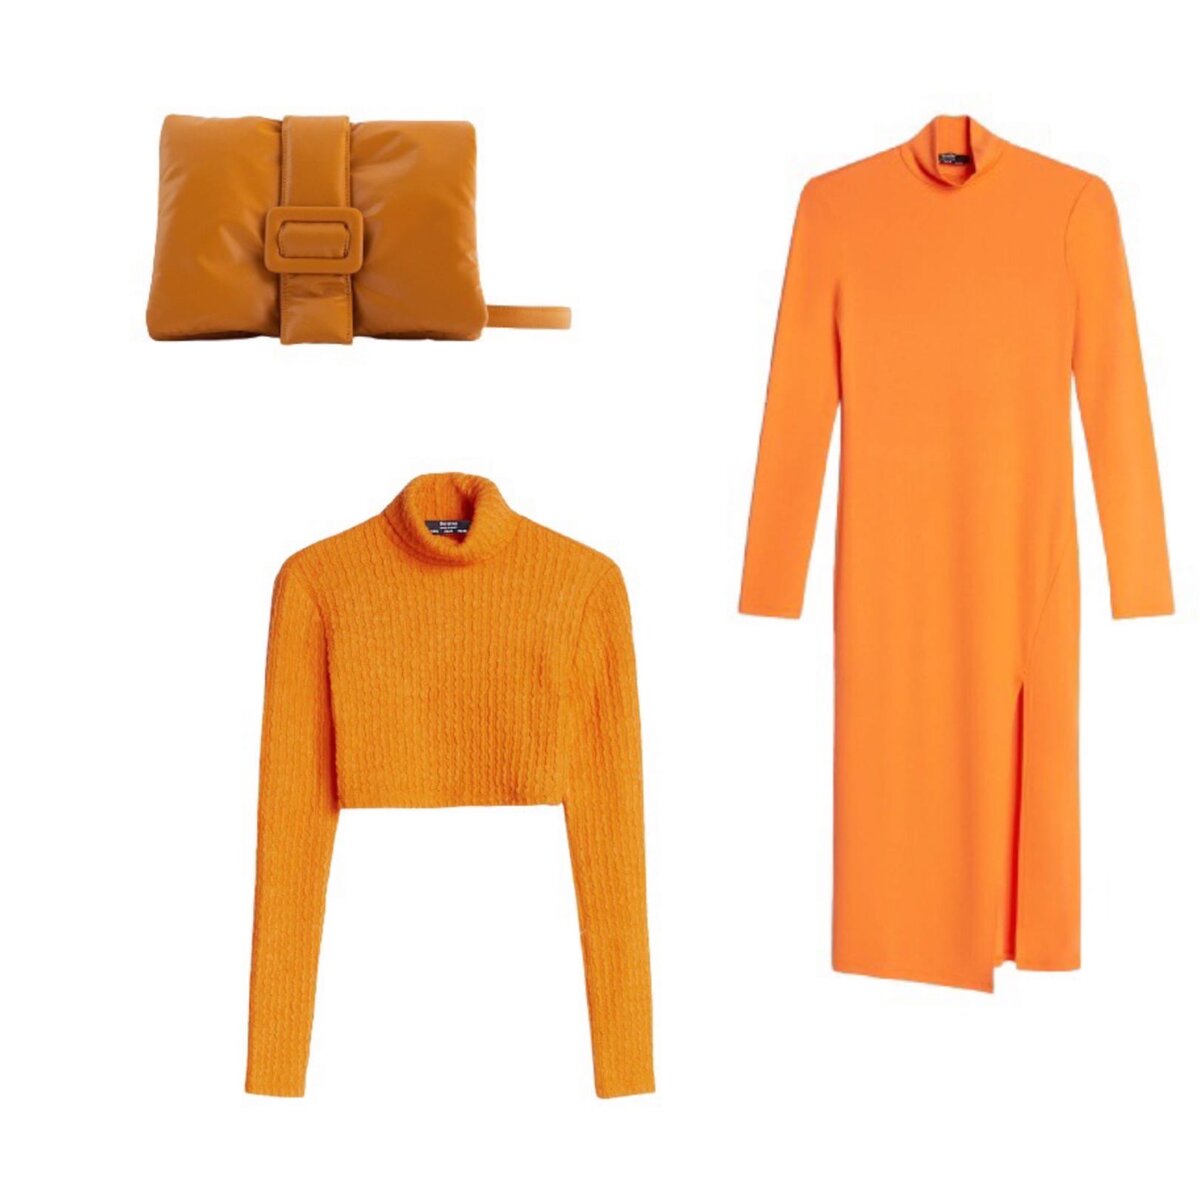 Самые модные цвета для гардероба на сезон осень-зима 2020/2021: образы от дизайнеров и вещи из магазинов